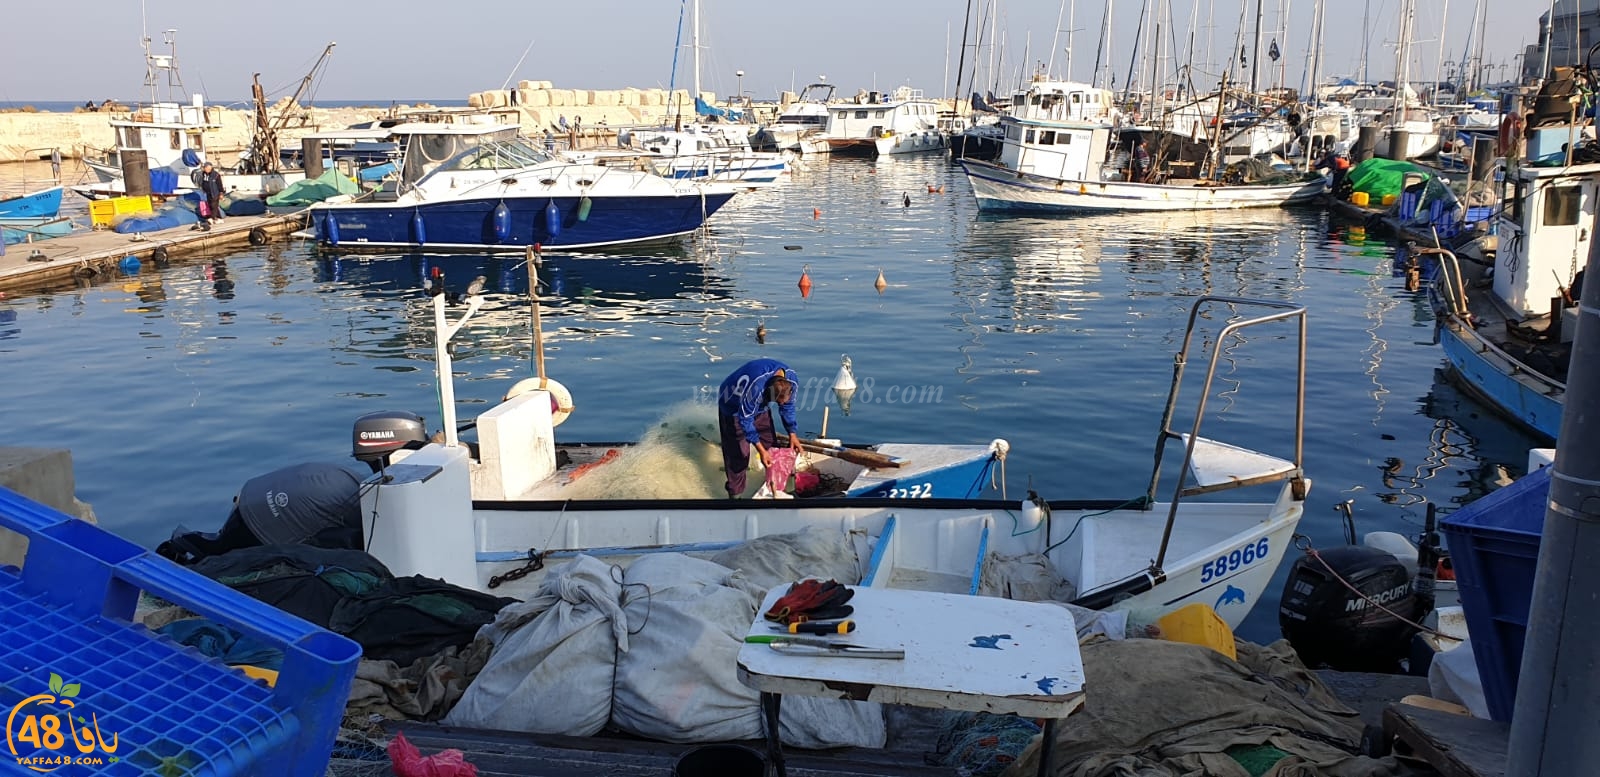 فيديو وصور: سوق الميناء لبيع الأسماك الطازجة في مرفأ ميناء يافا